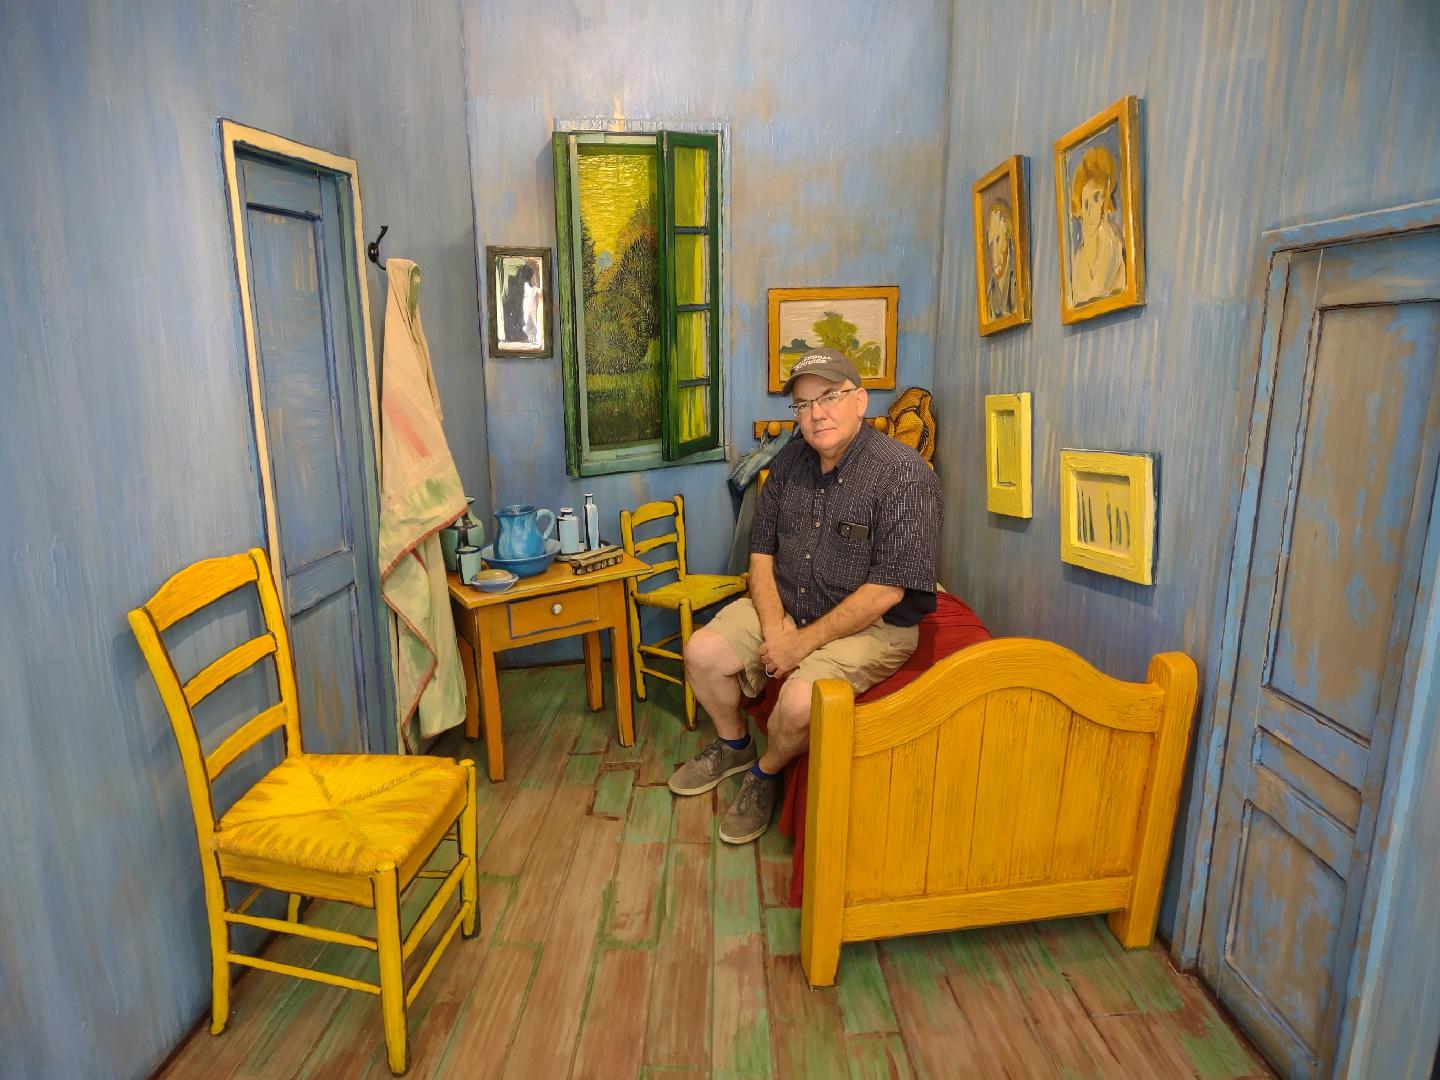 Joe in Van Gogh Painting